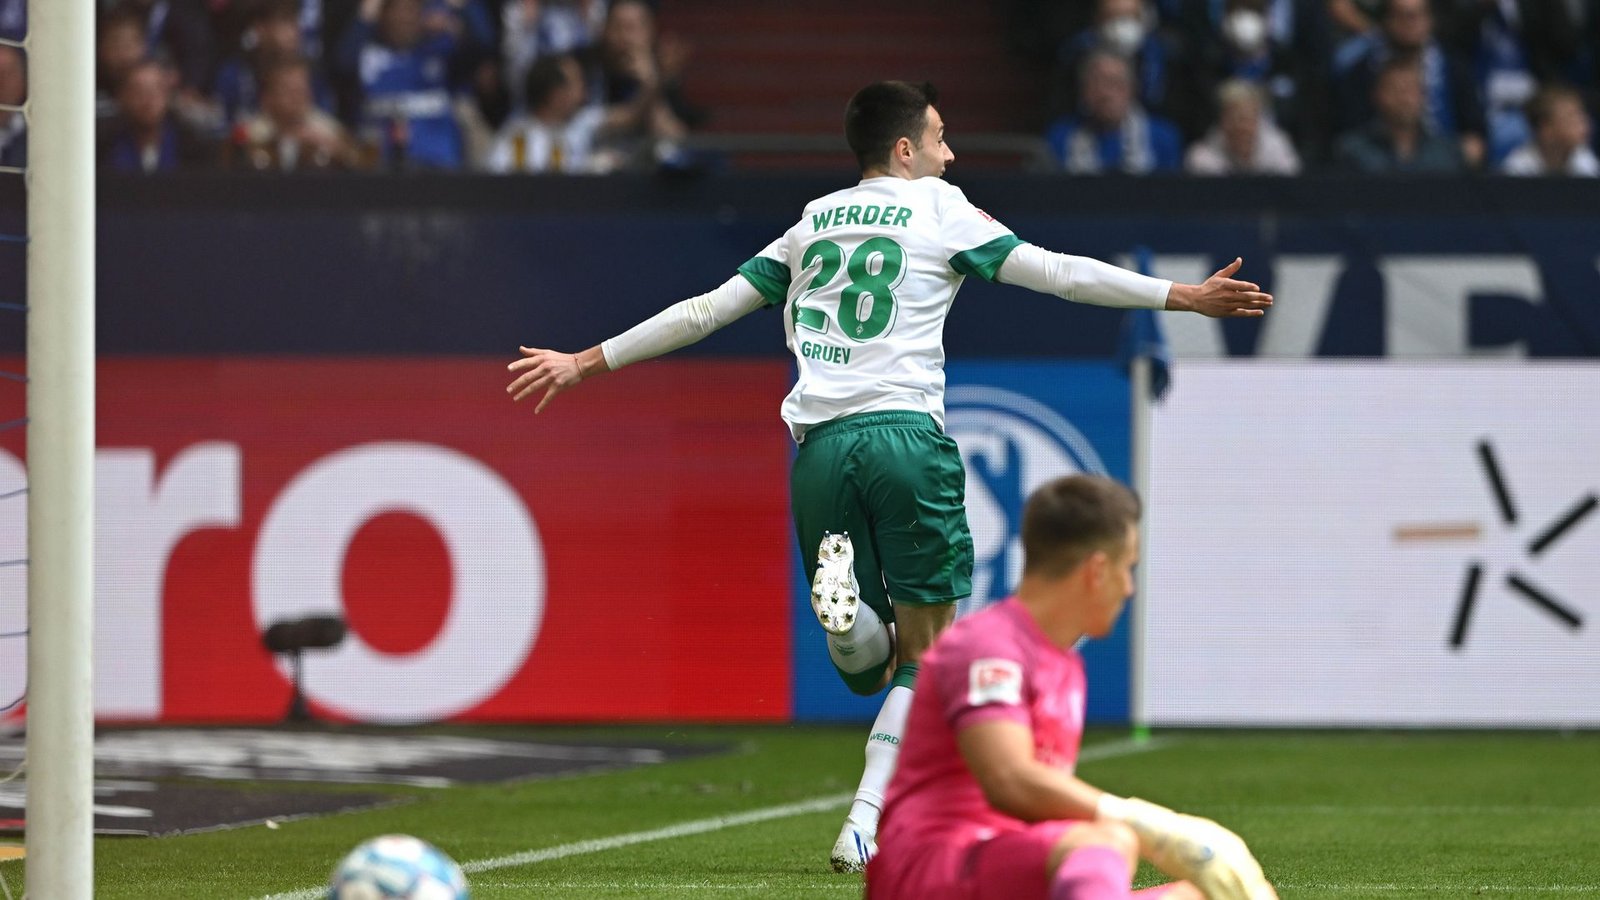 Bremens Ilia Gruev dreht nach seinem Führungstor auf Schalke jubelnd ab.Foto: David Inderlied/dpa